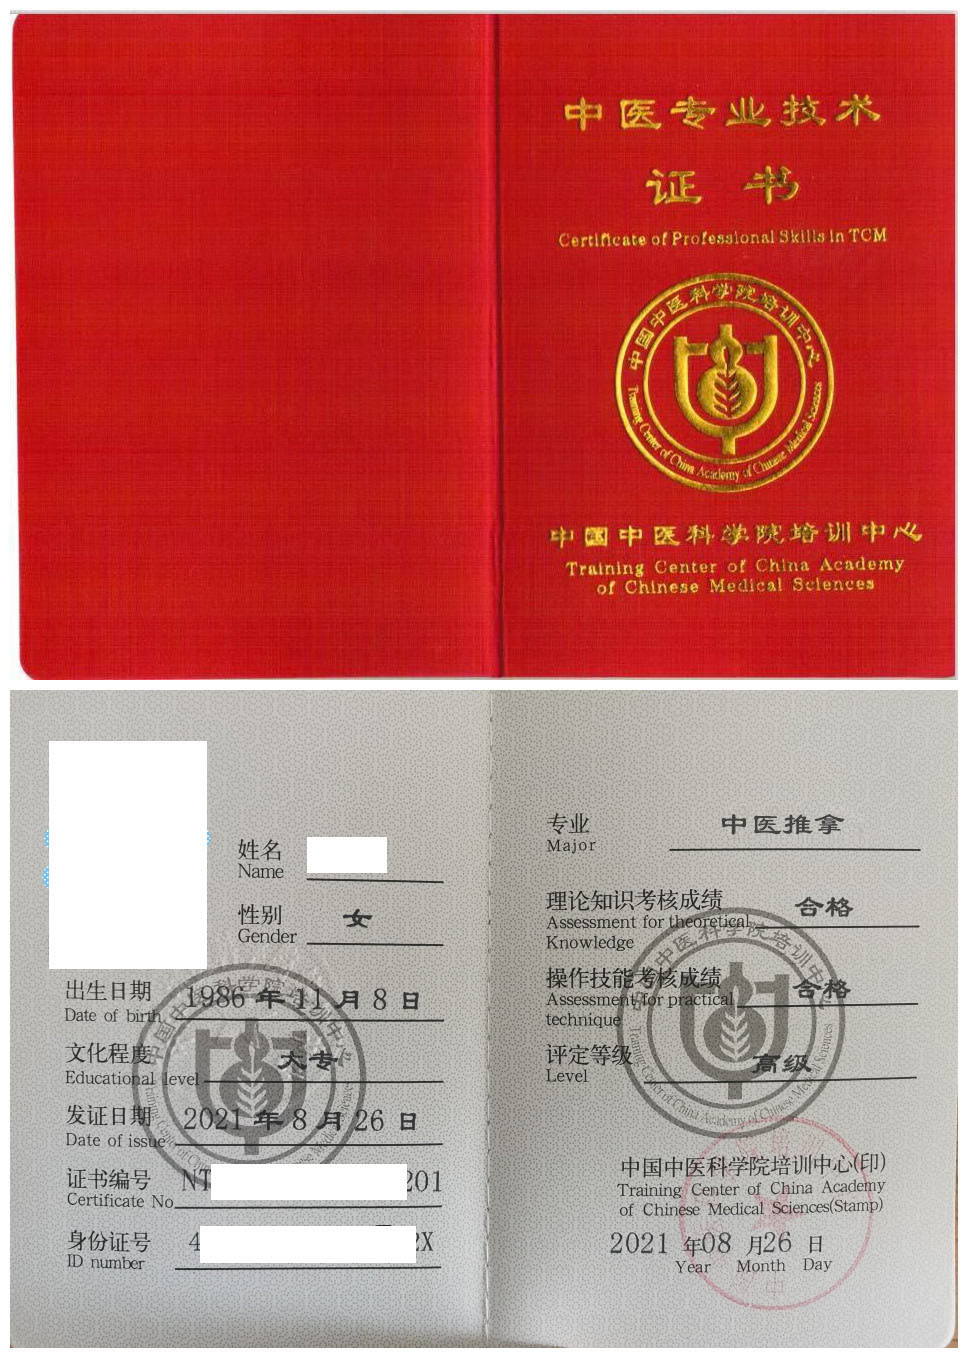 中国中医科学院培训中心 中医专业技术证书 中医推拿证证书样本